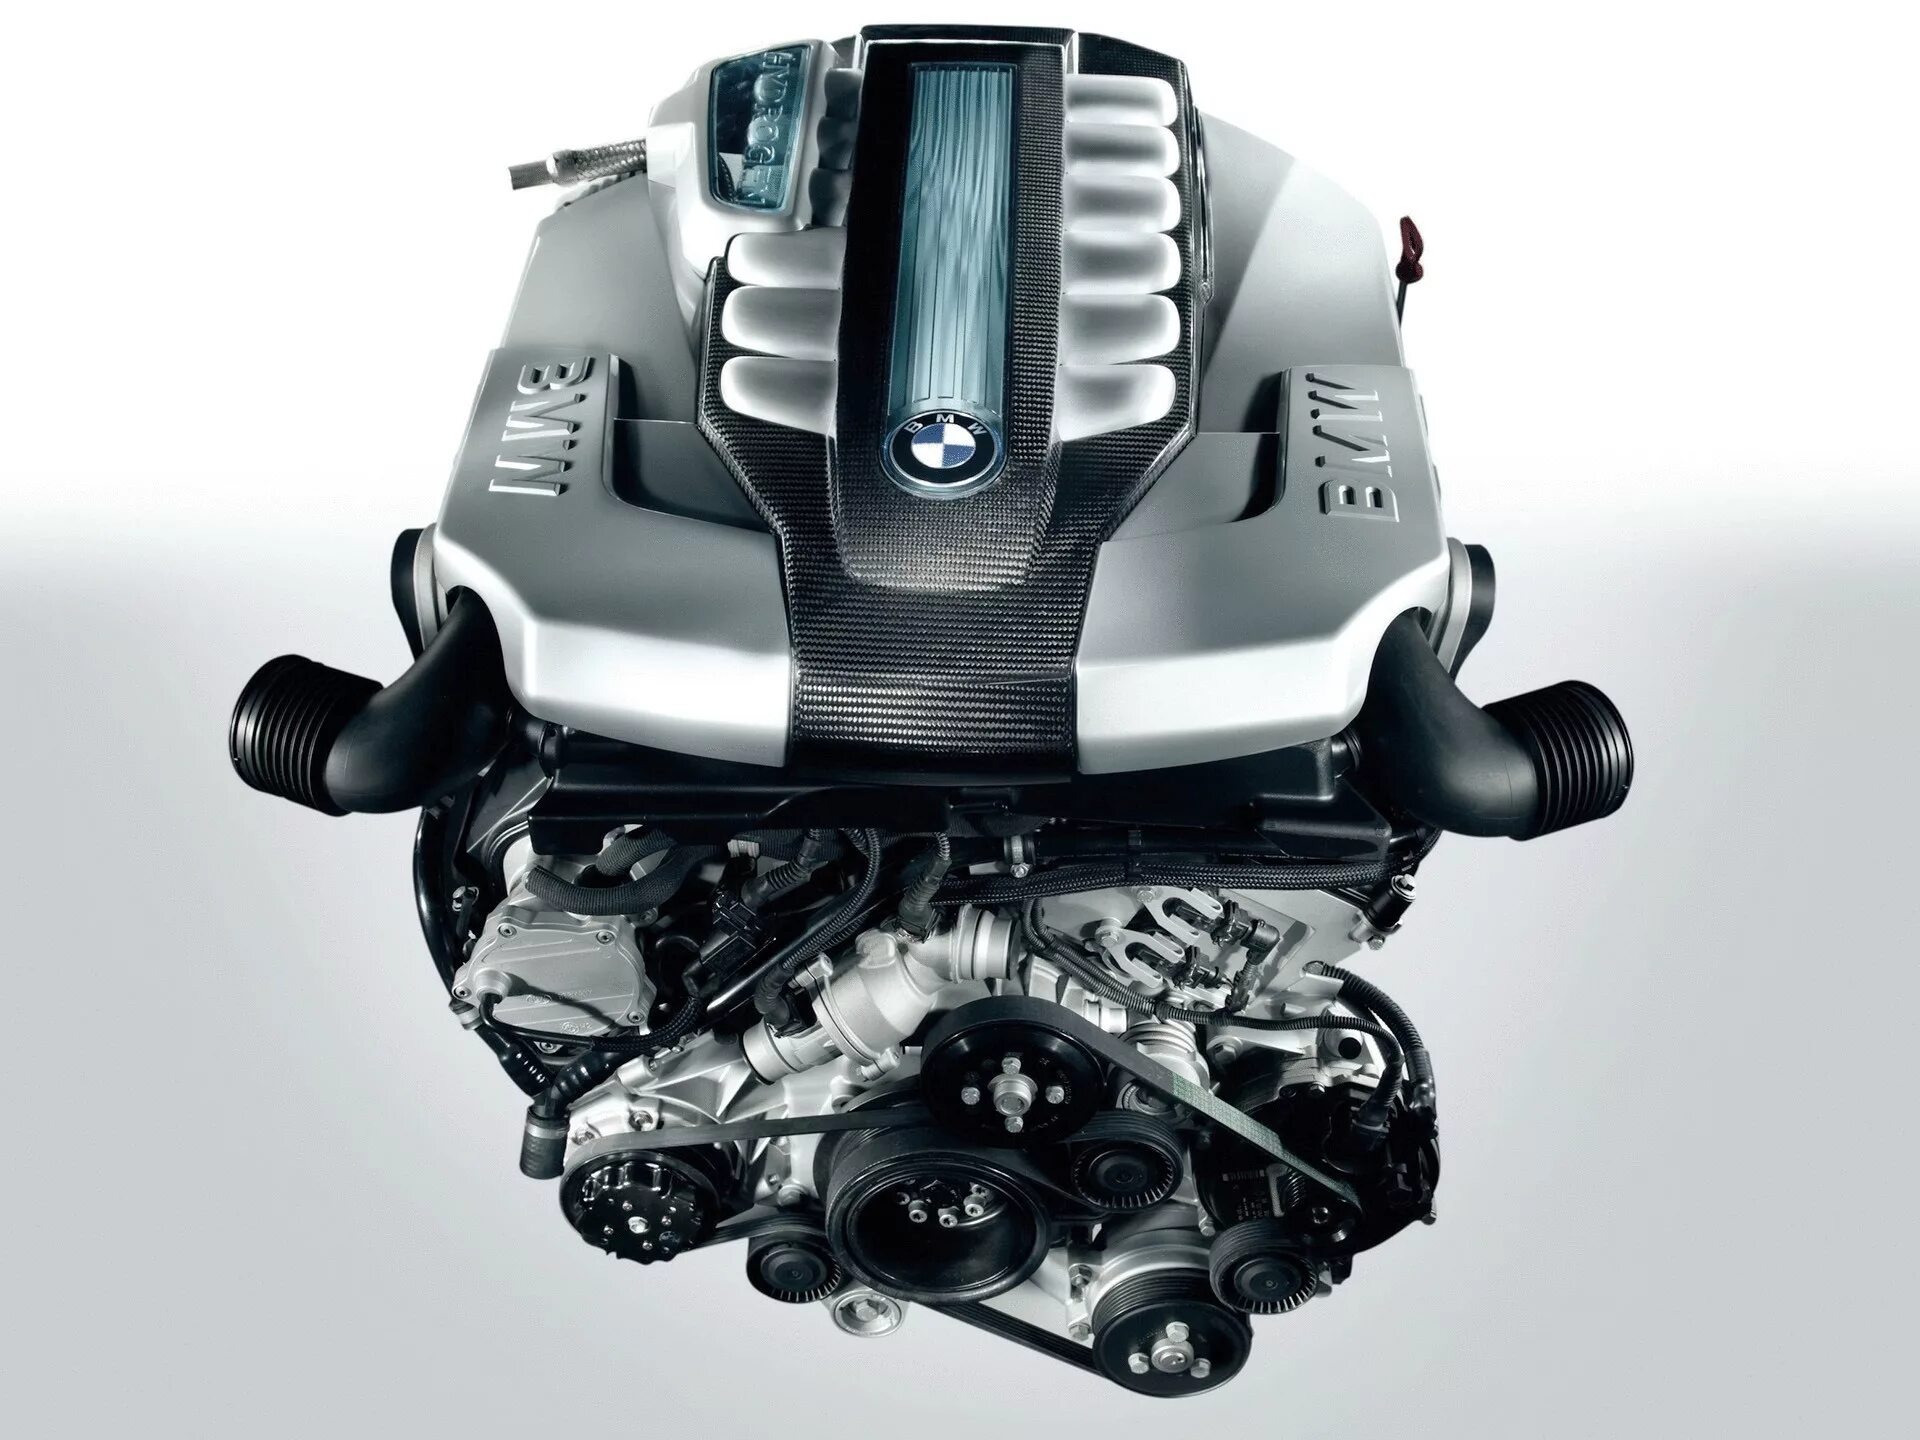 Куплю неисправный двигатель. BMW hydrogen 7 двигатель. BMW hydrogen 7 с водородным двигателем внутреннего сгорания. Водородный дожигатель. Двигатель будущего.